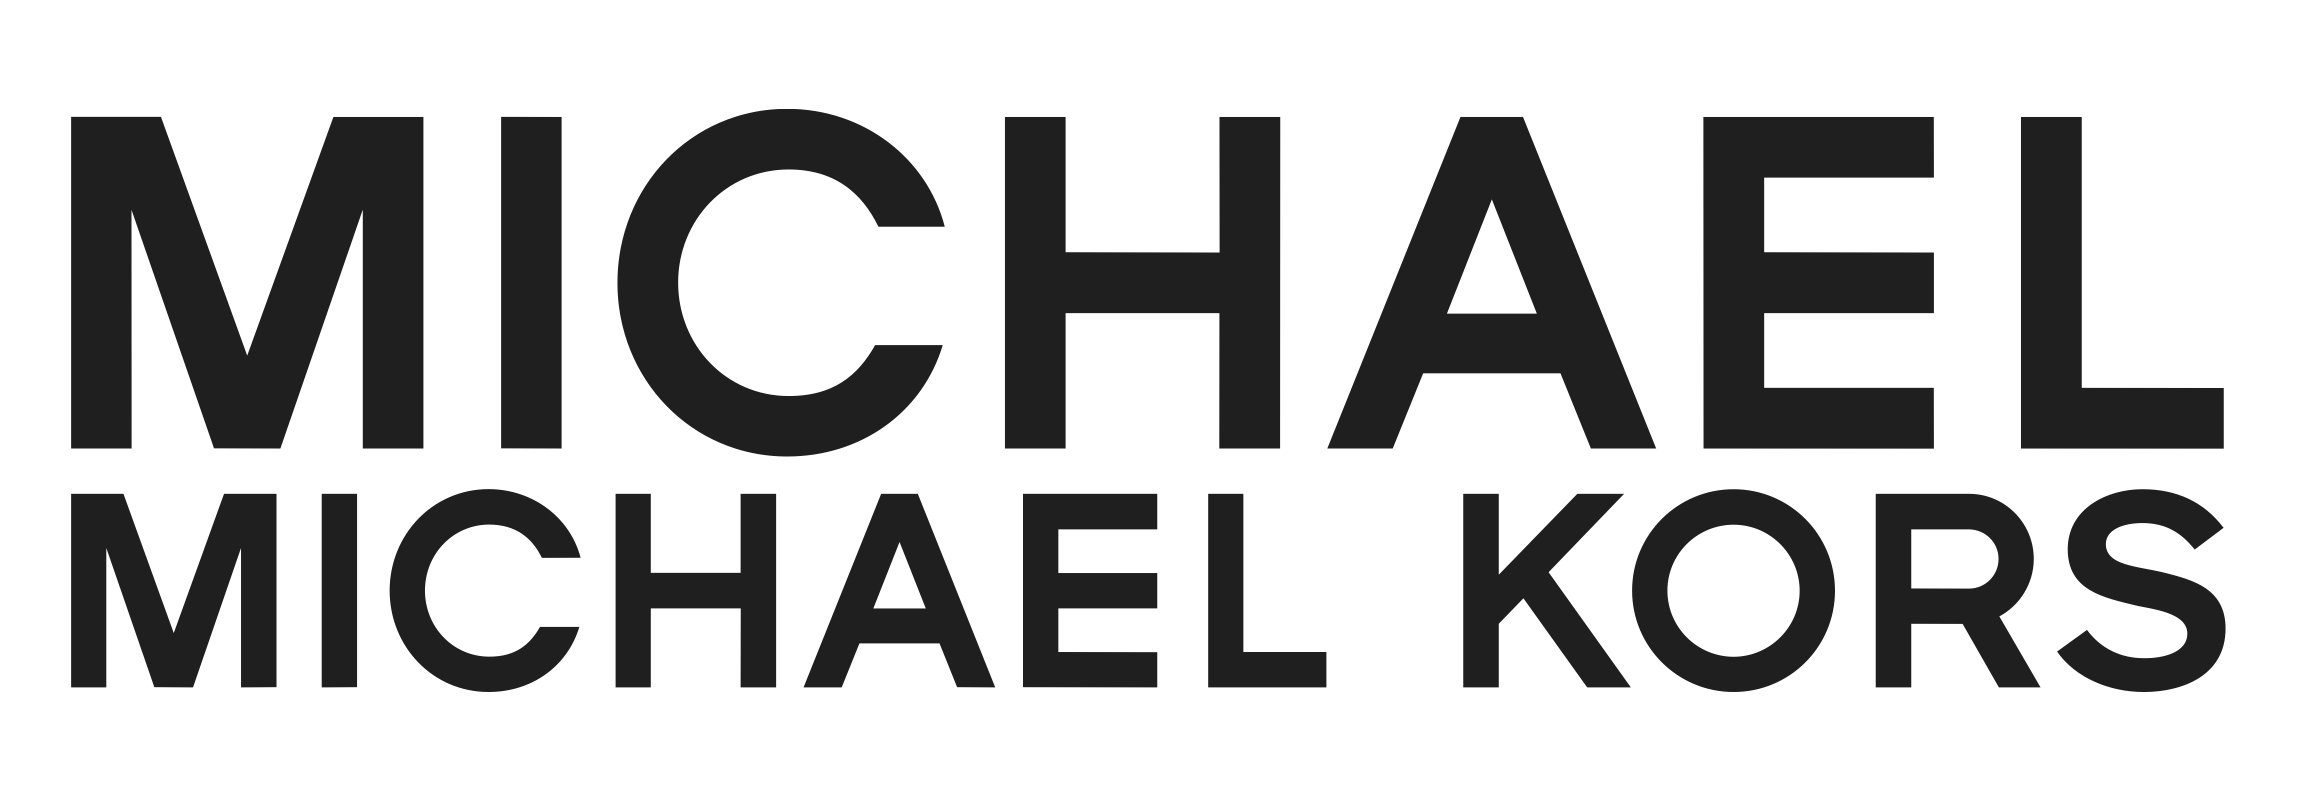 michael kors collection logo